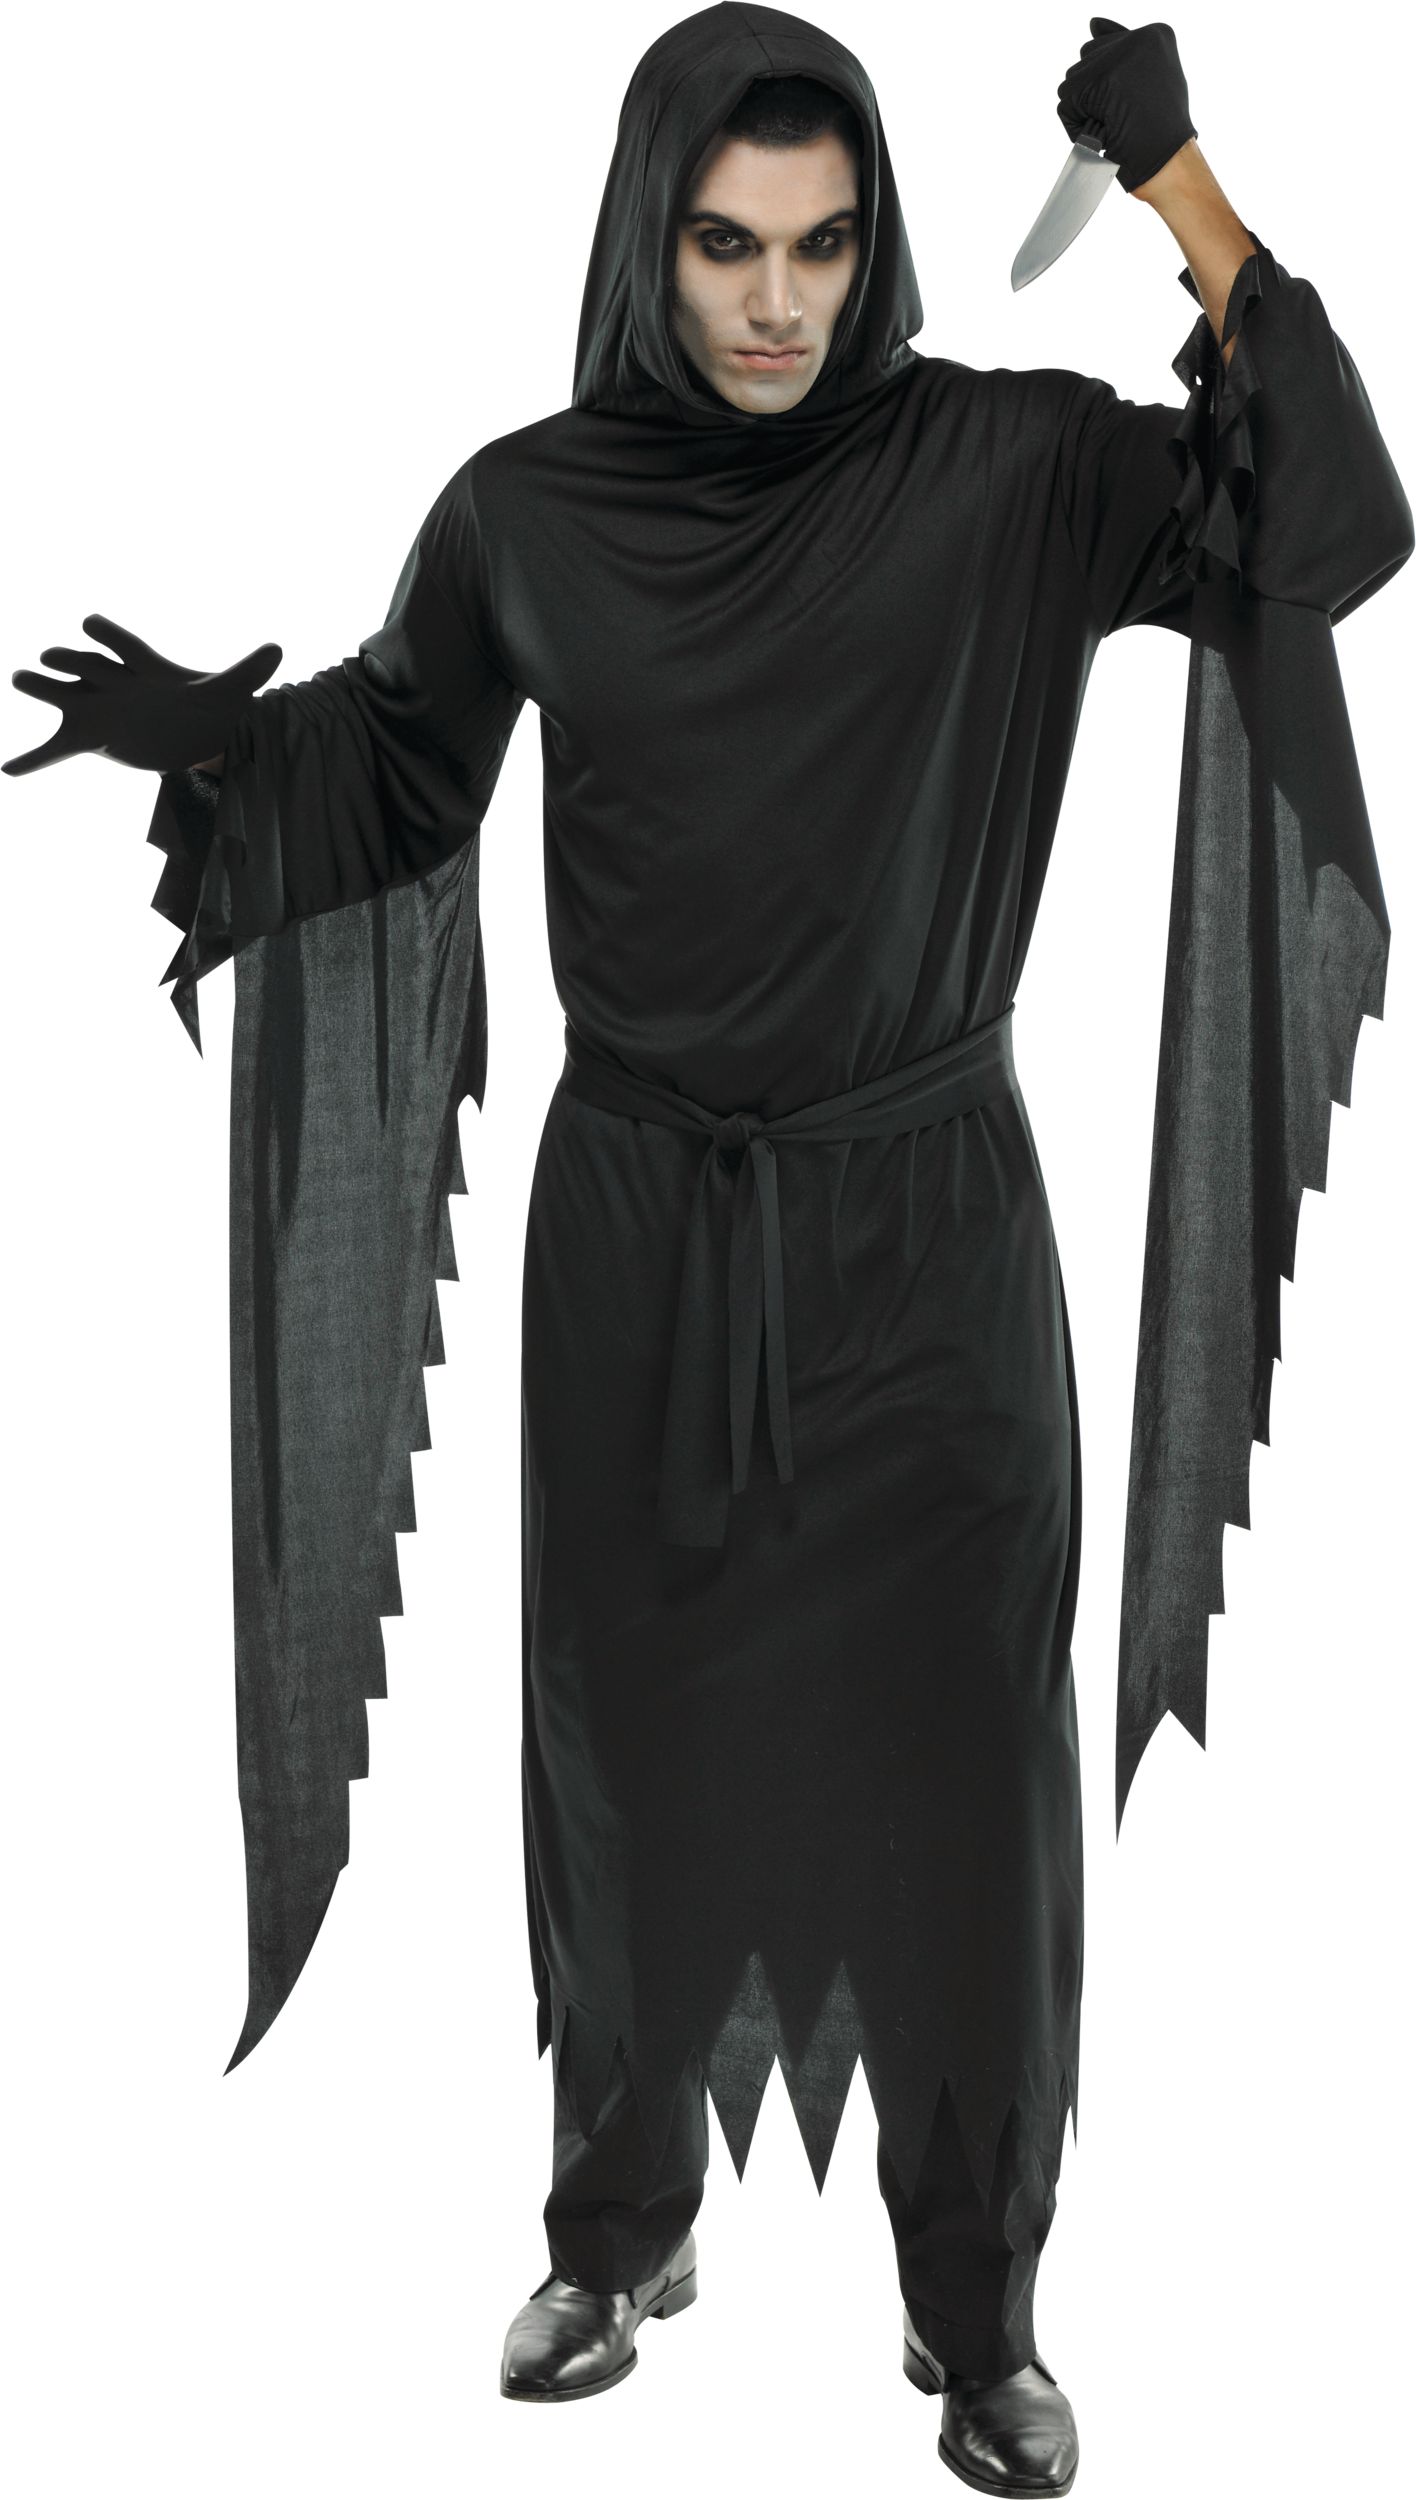 Robe Frissons avec capuchon pour adulte, noir, taille universelle,  accessoire de costume à porter pour l'Halloween